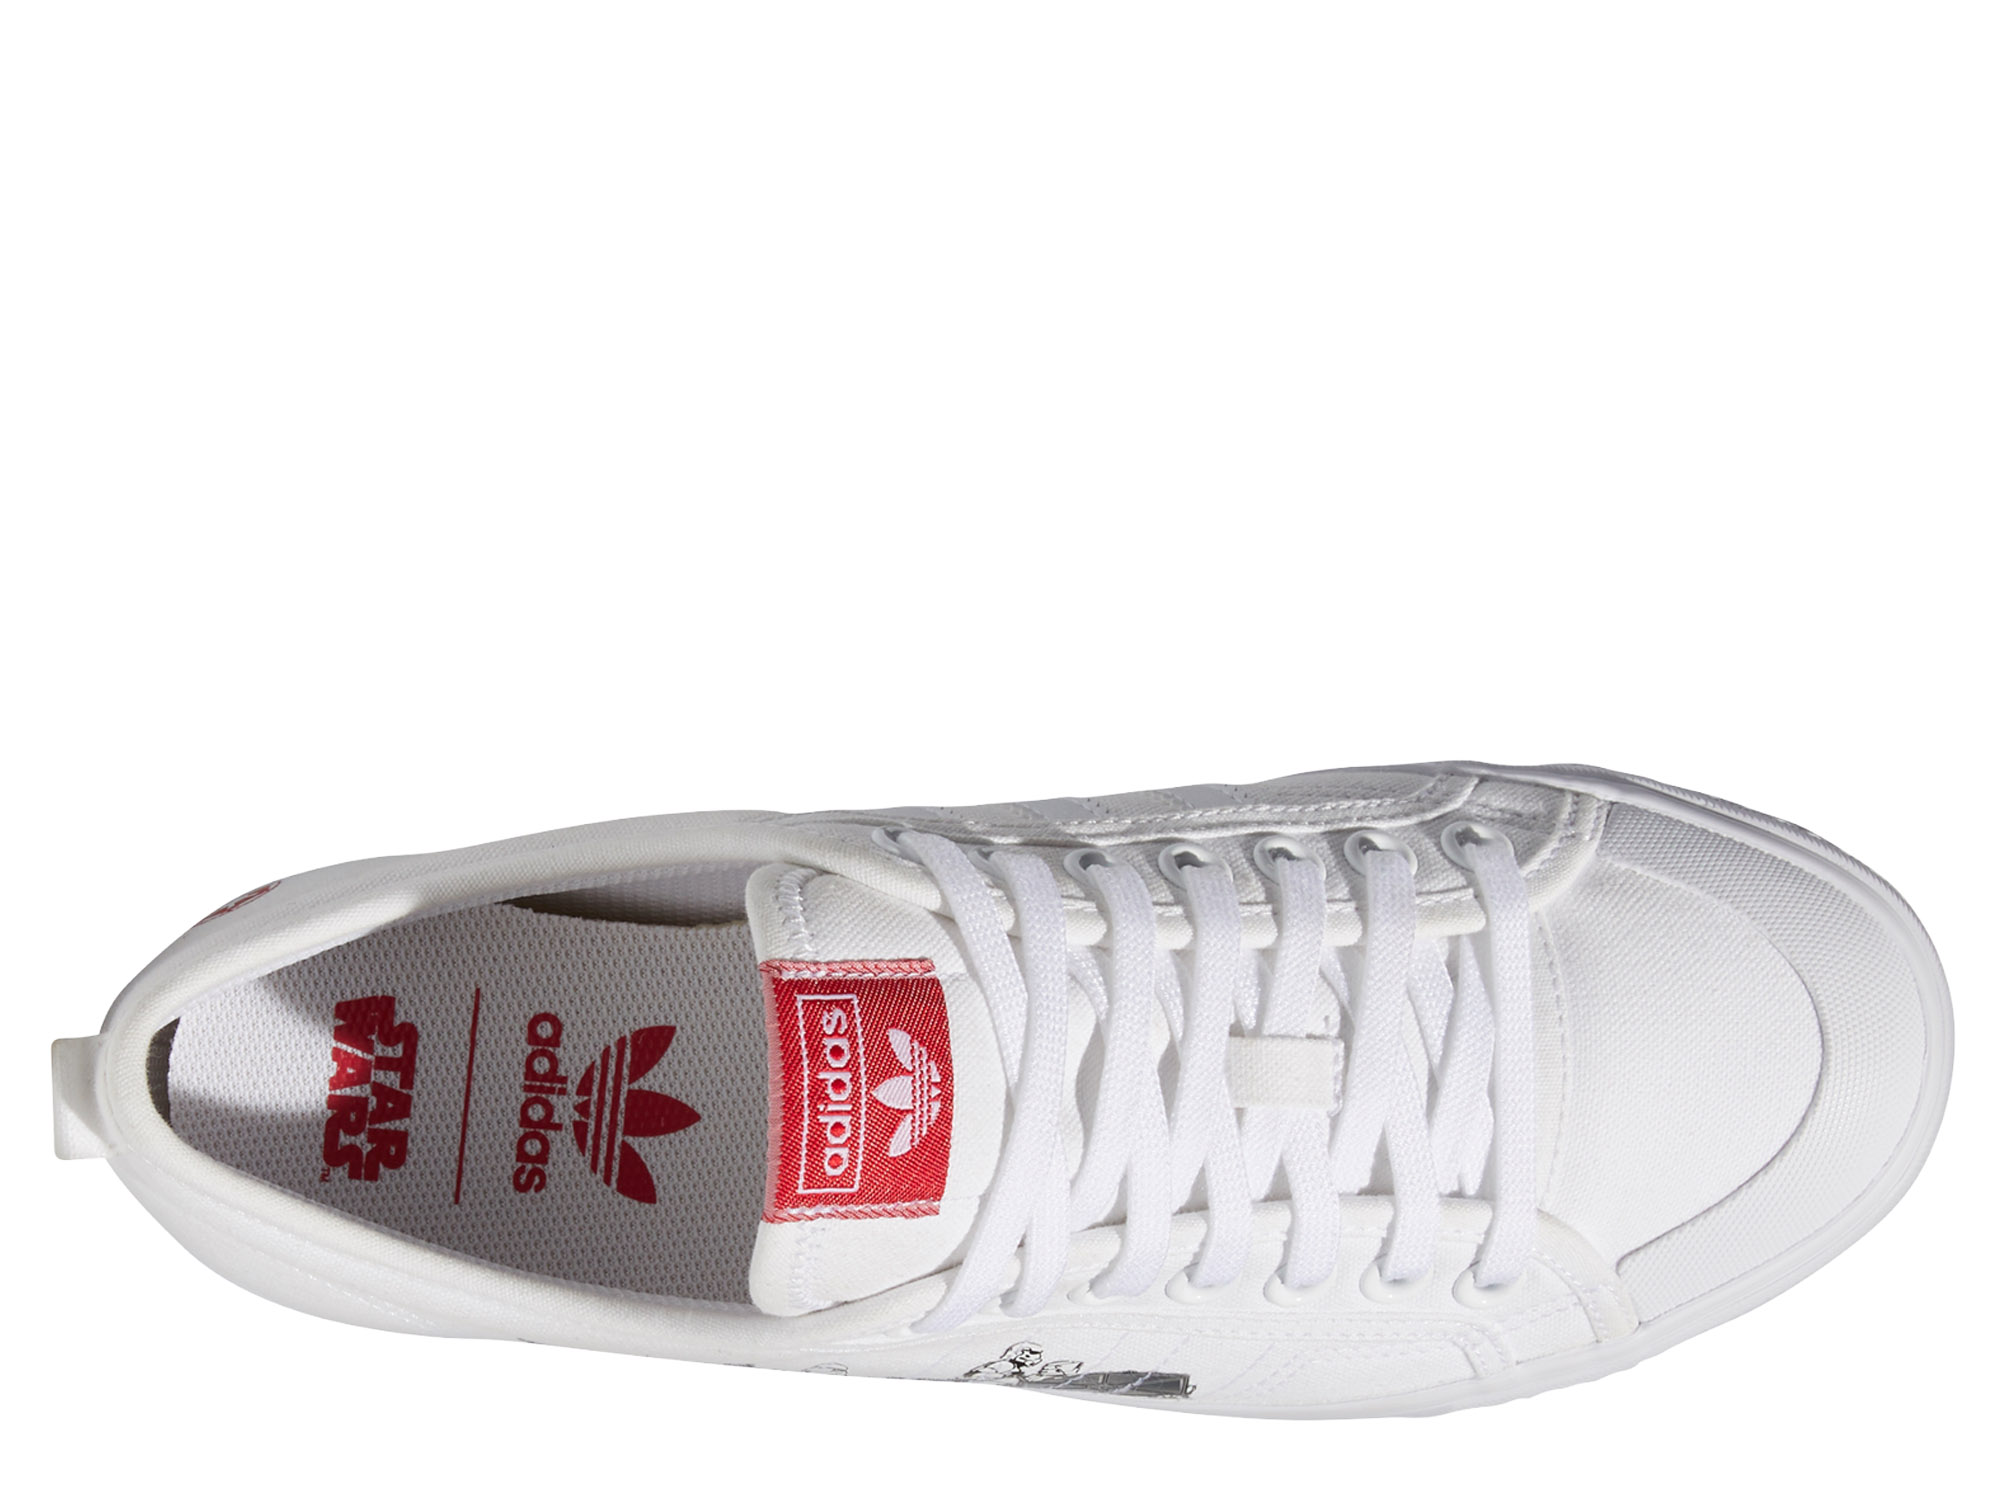 Adidas Originals Nizza X Star Wars Herren Sneaker